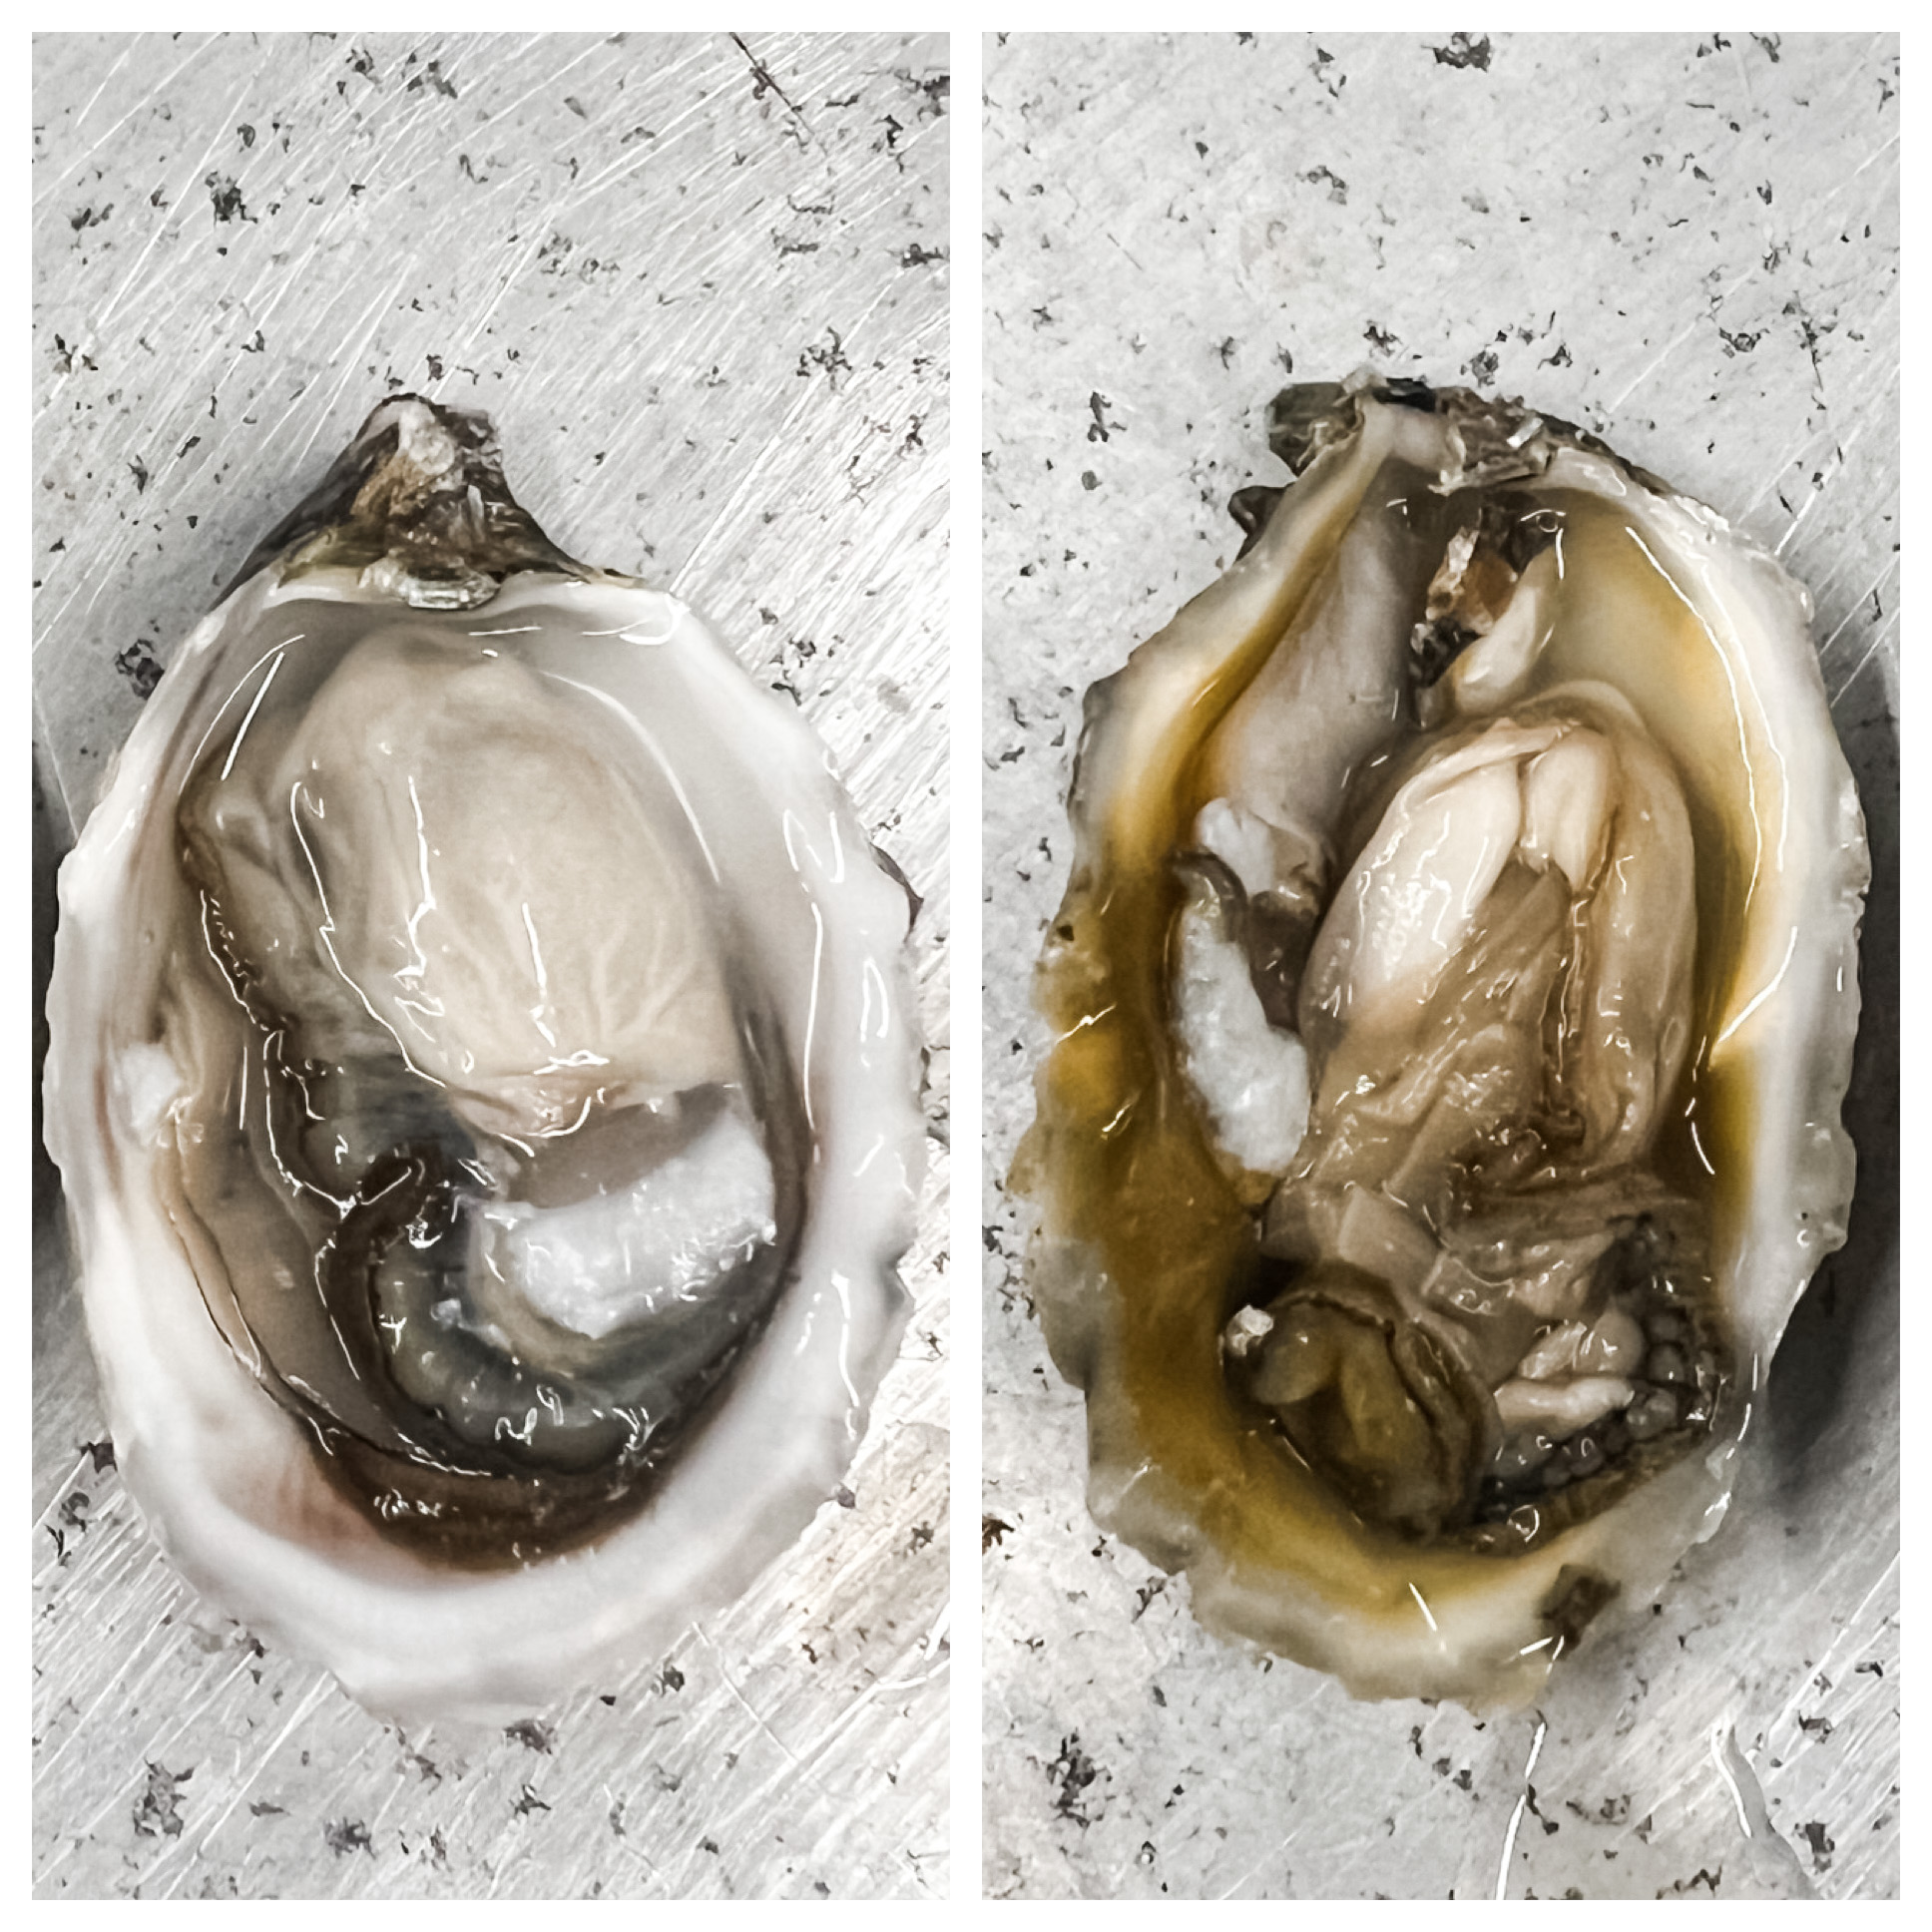 Oyster Comparison